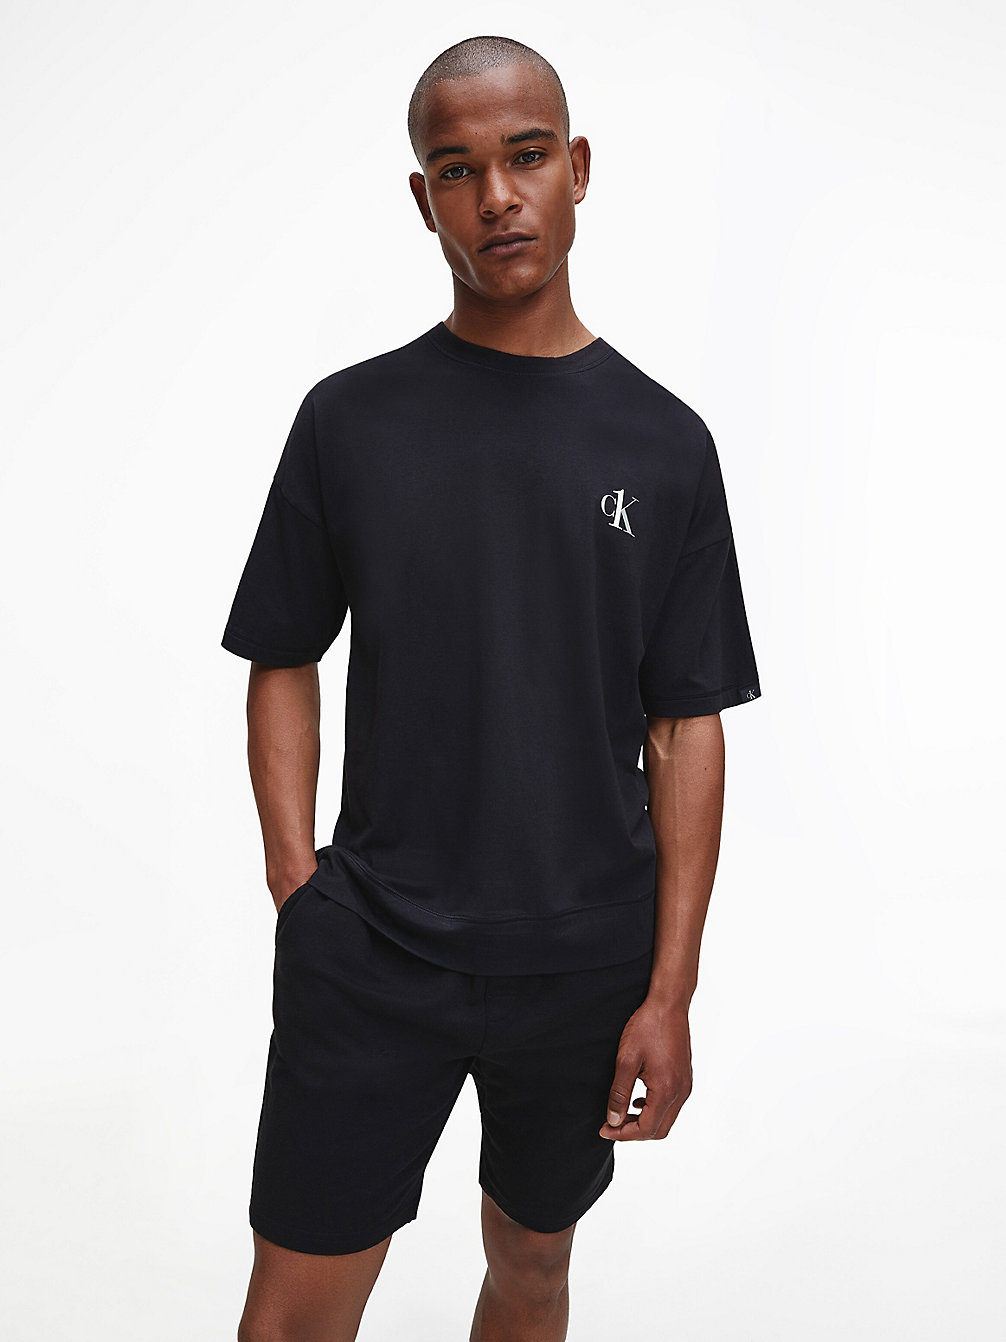 BLACK Lounge T-Shirt - CK One undefined men Calvin Klein